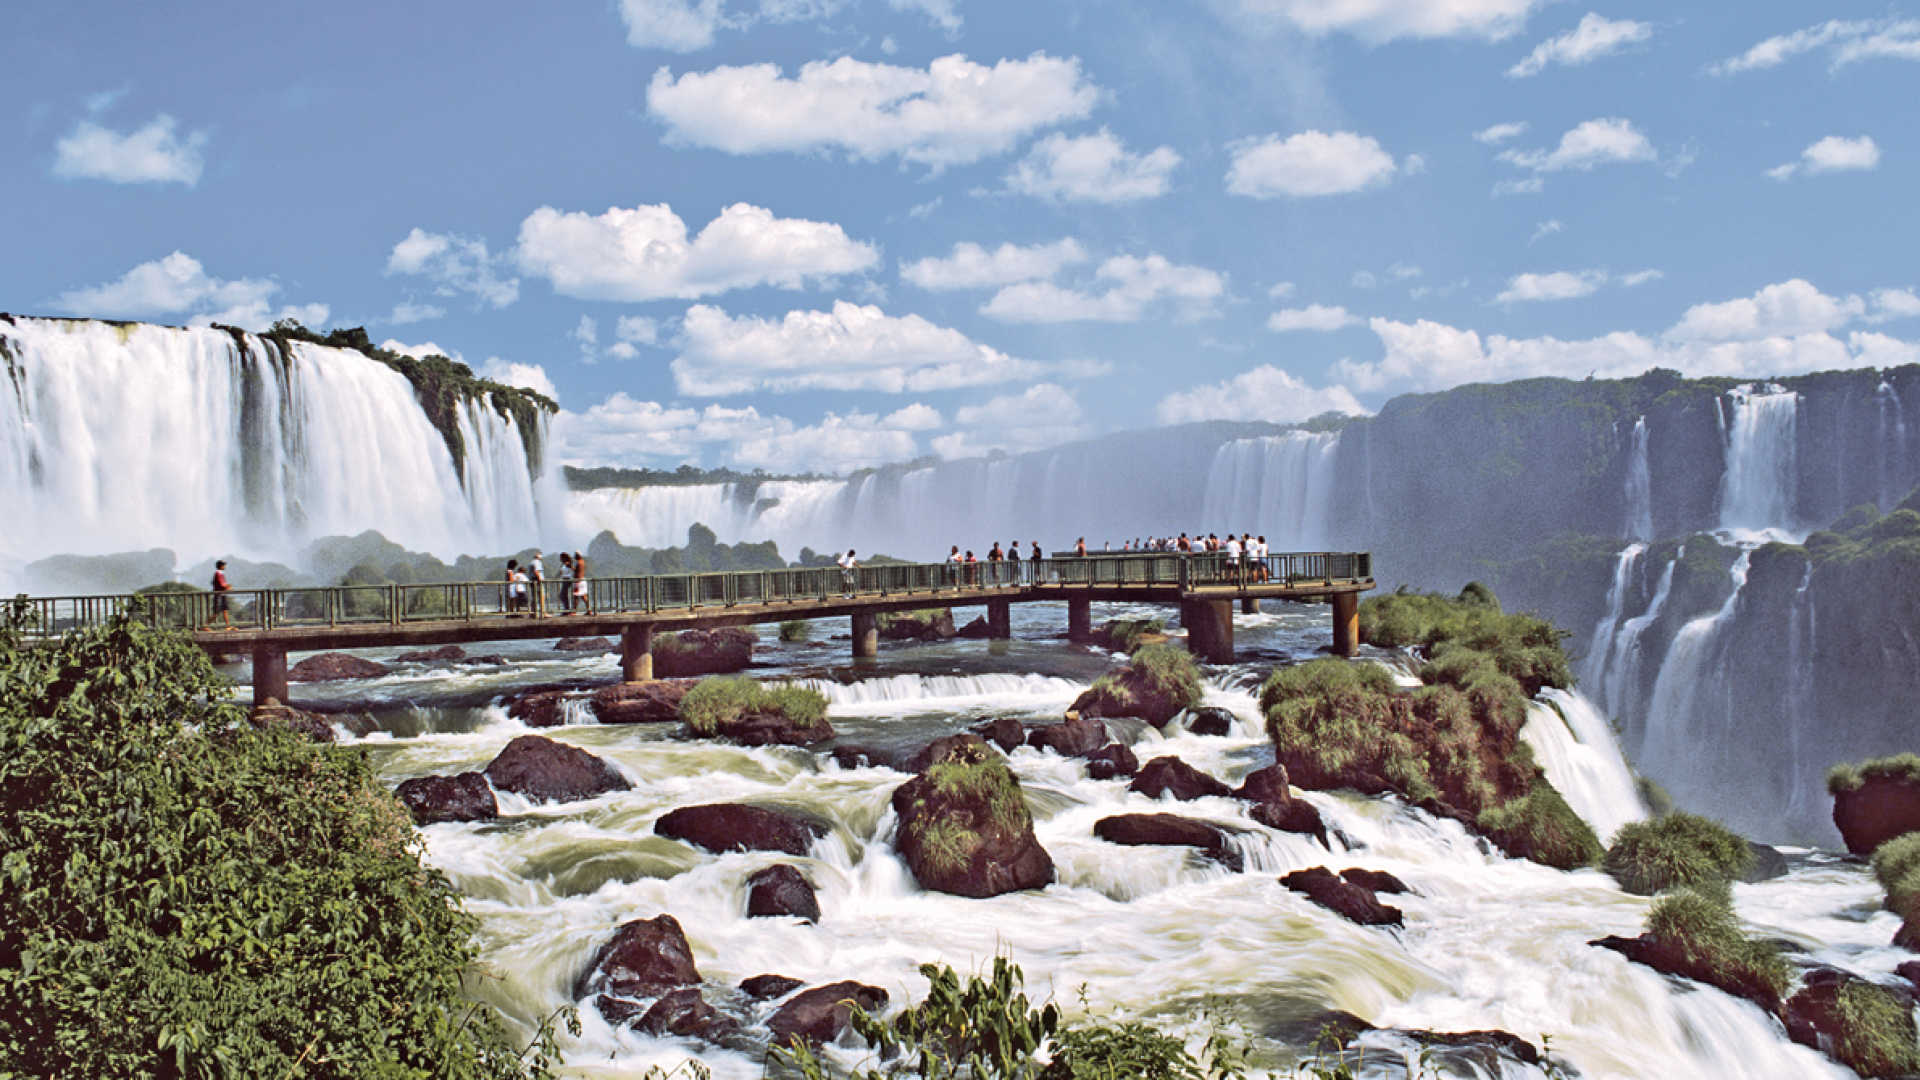 Iguaçu Falls Holidays. Book For 2019 2020 With Our Iguaçu Falls